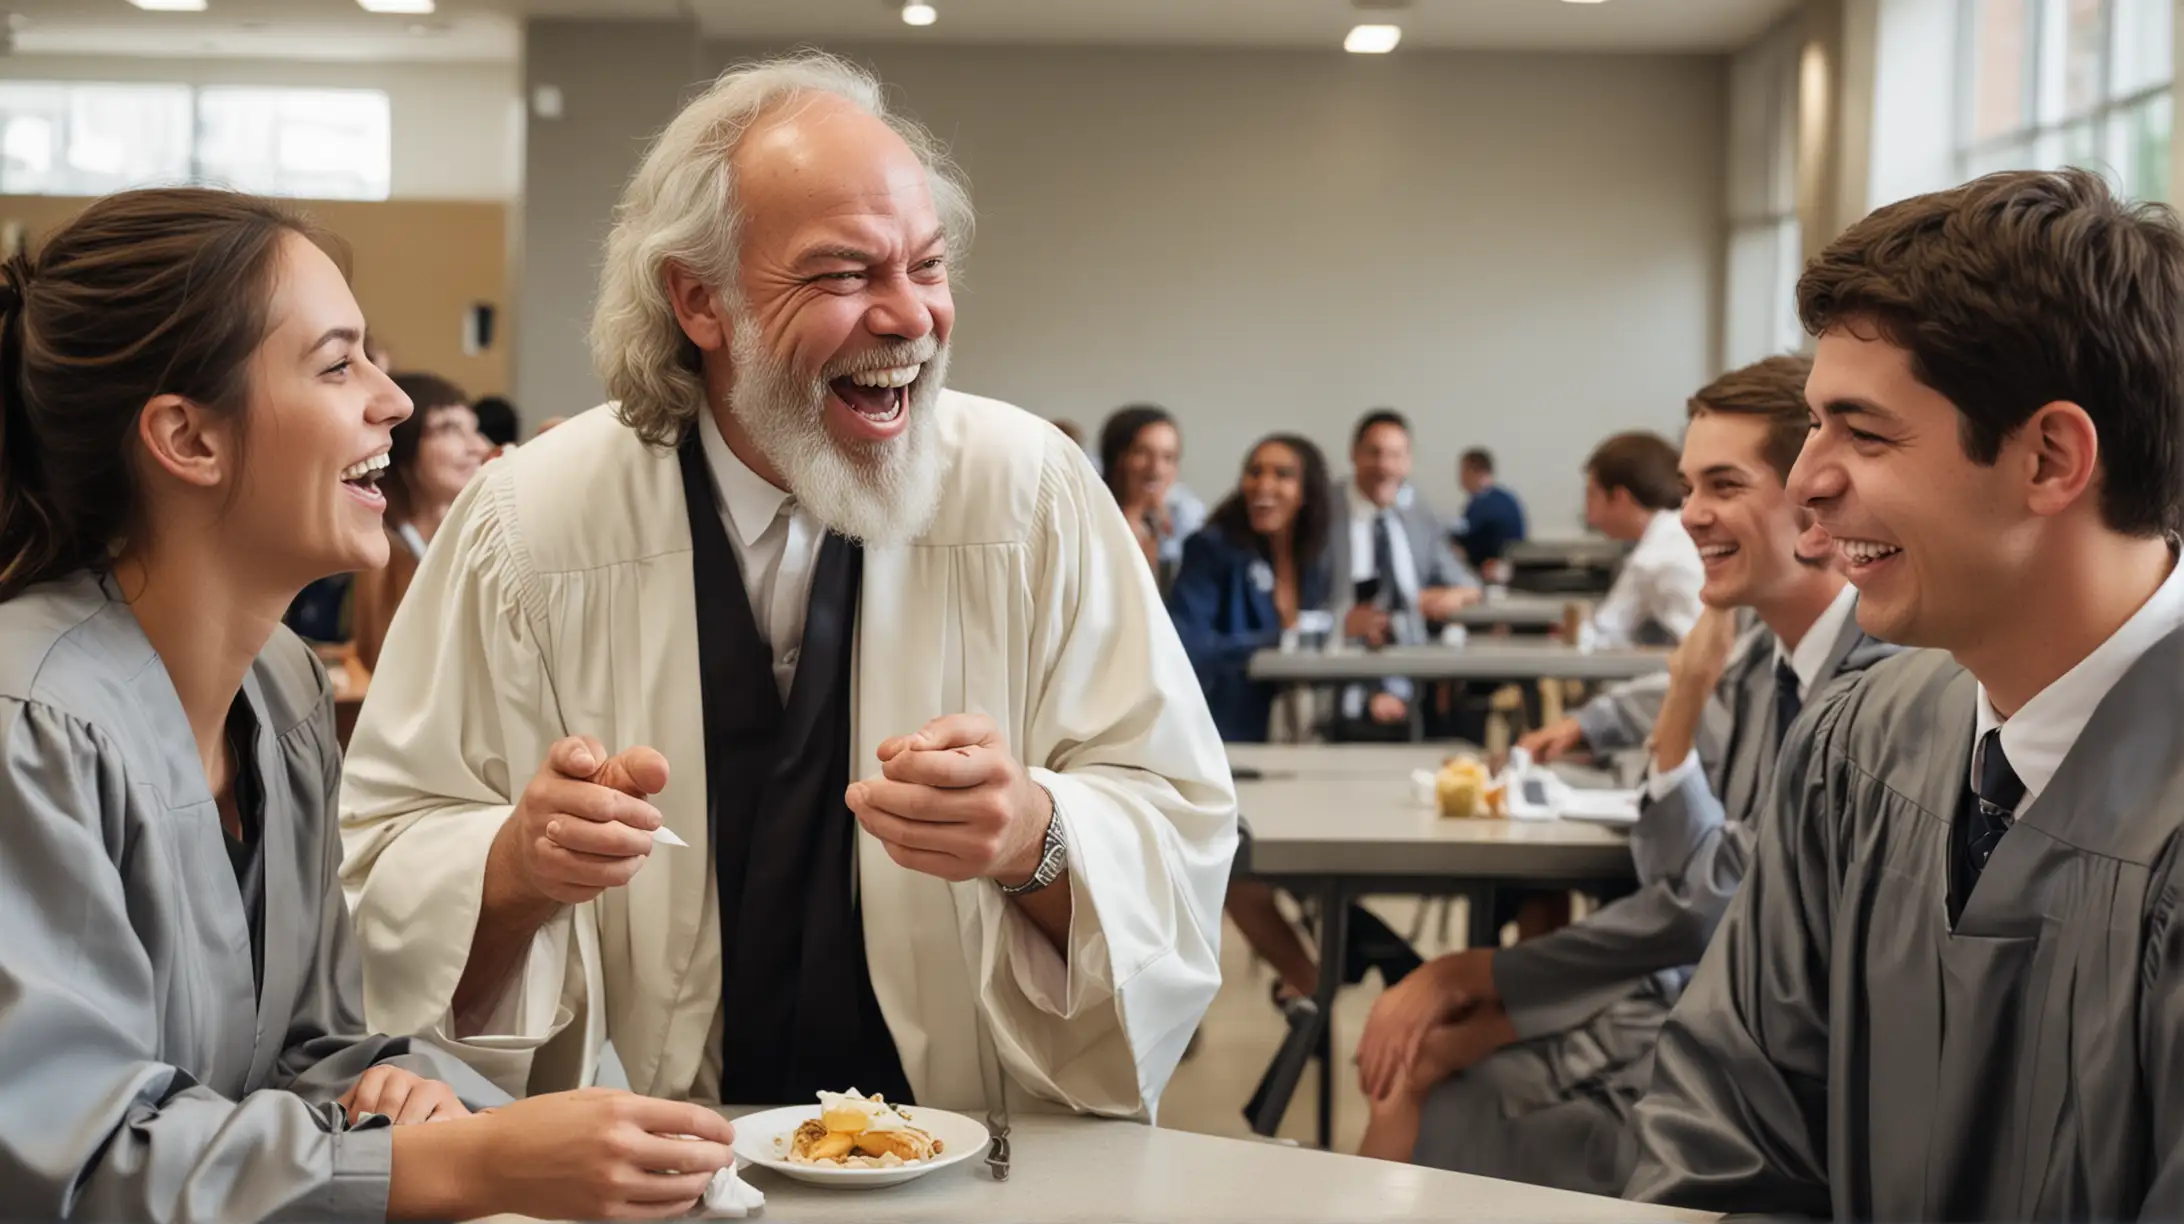 Sokrates avukat cübbesi ile modern bir kampüs kantininde genç insanlar ile gülüyor